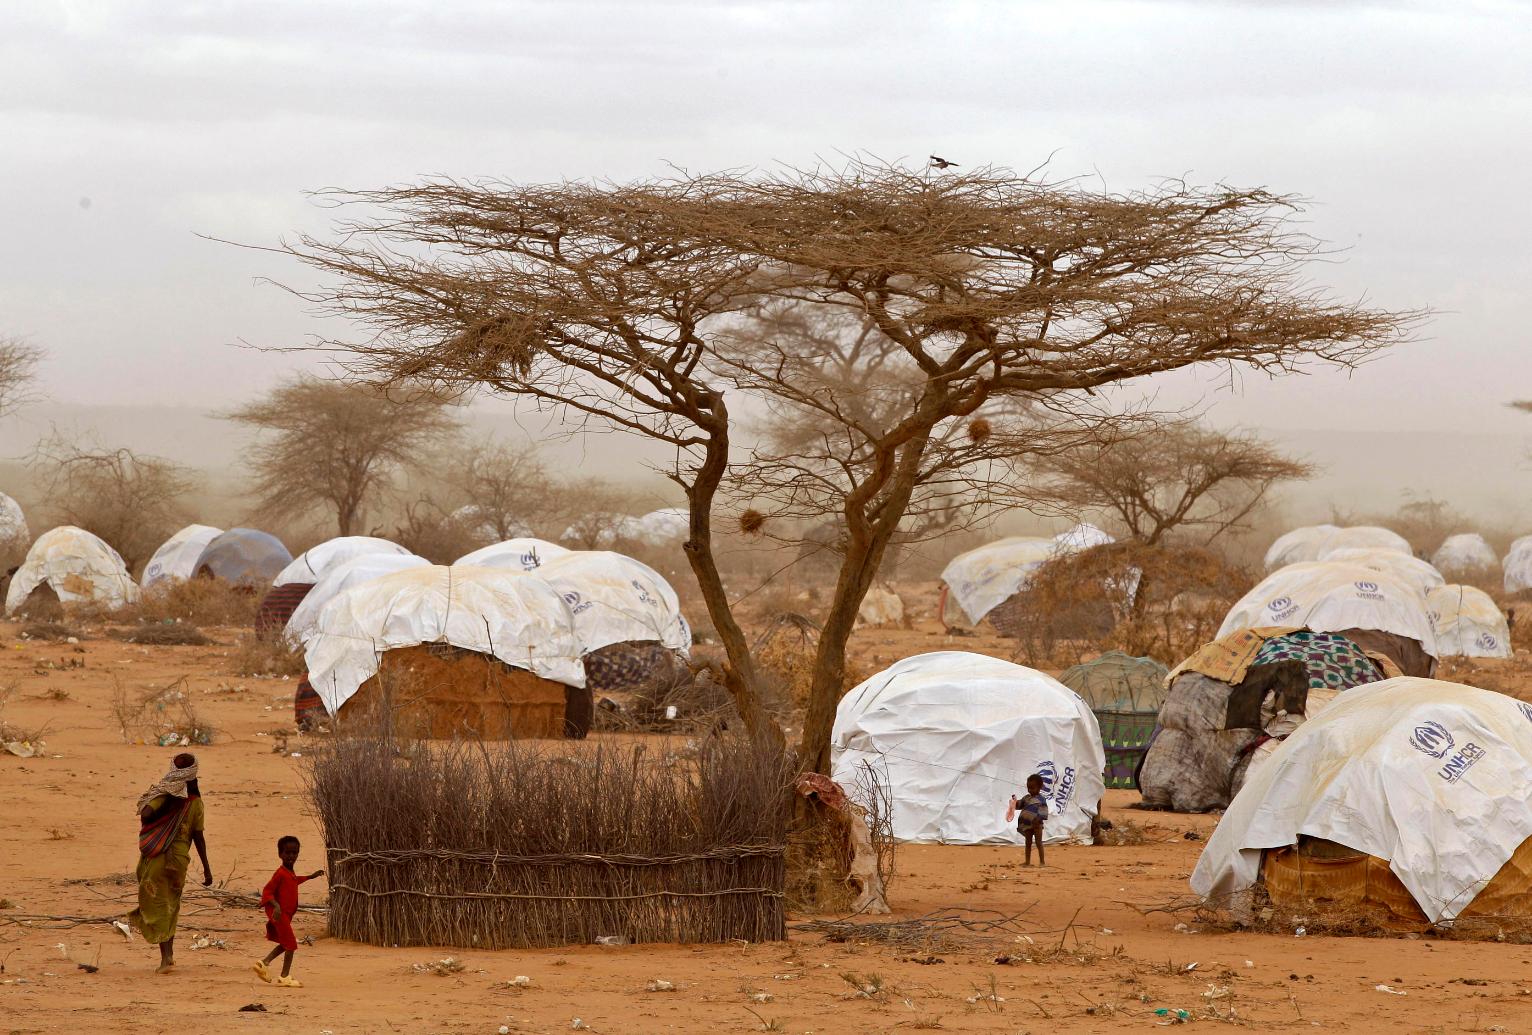 Кения: крупнейший в мире лагерь беженцев под угрозой закрытия